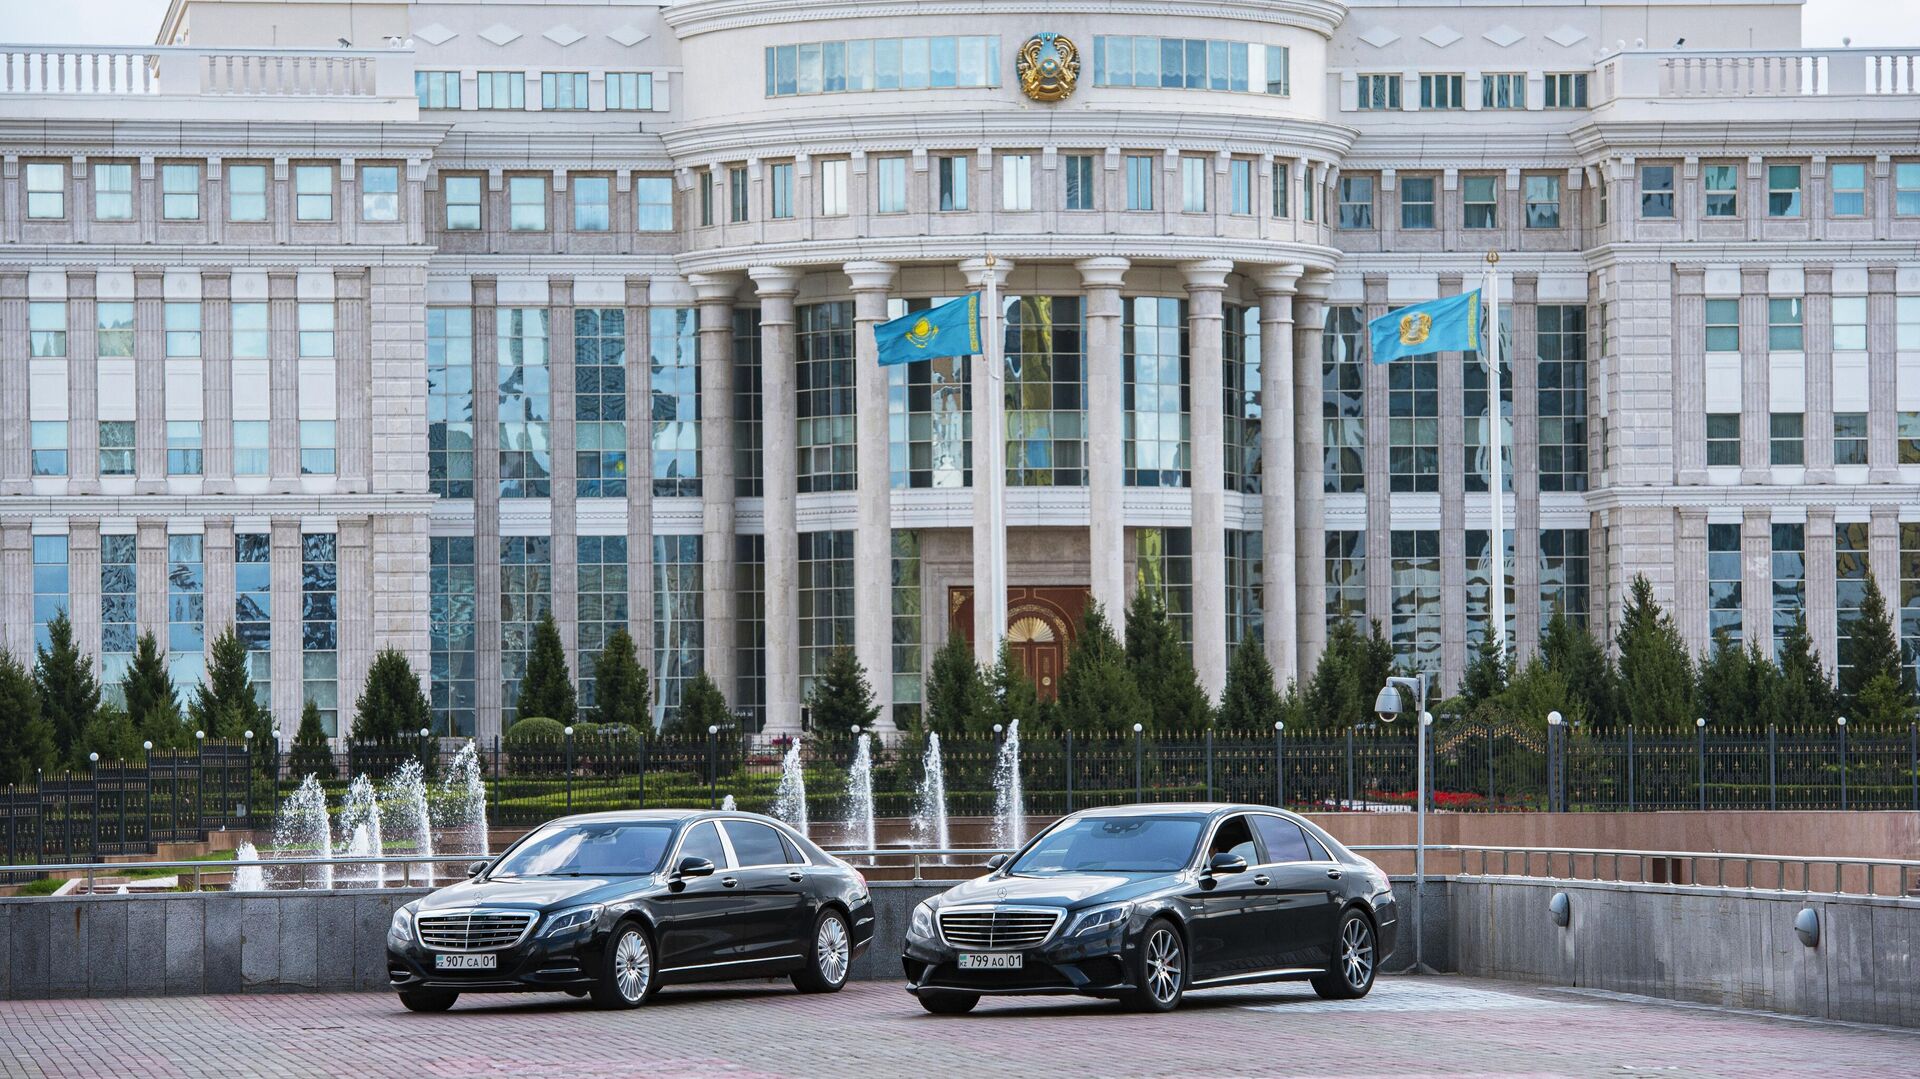 Здание парламента Казахстана в Нур-Султане - Sputnik Грузия, 1920, 11.01.2022